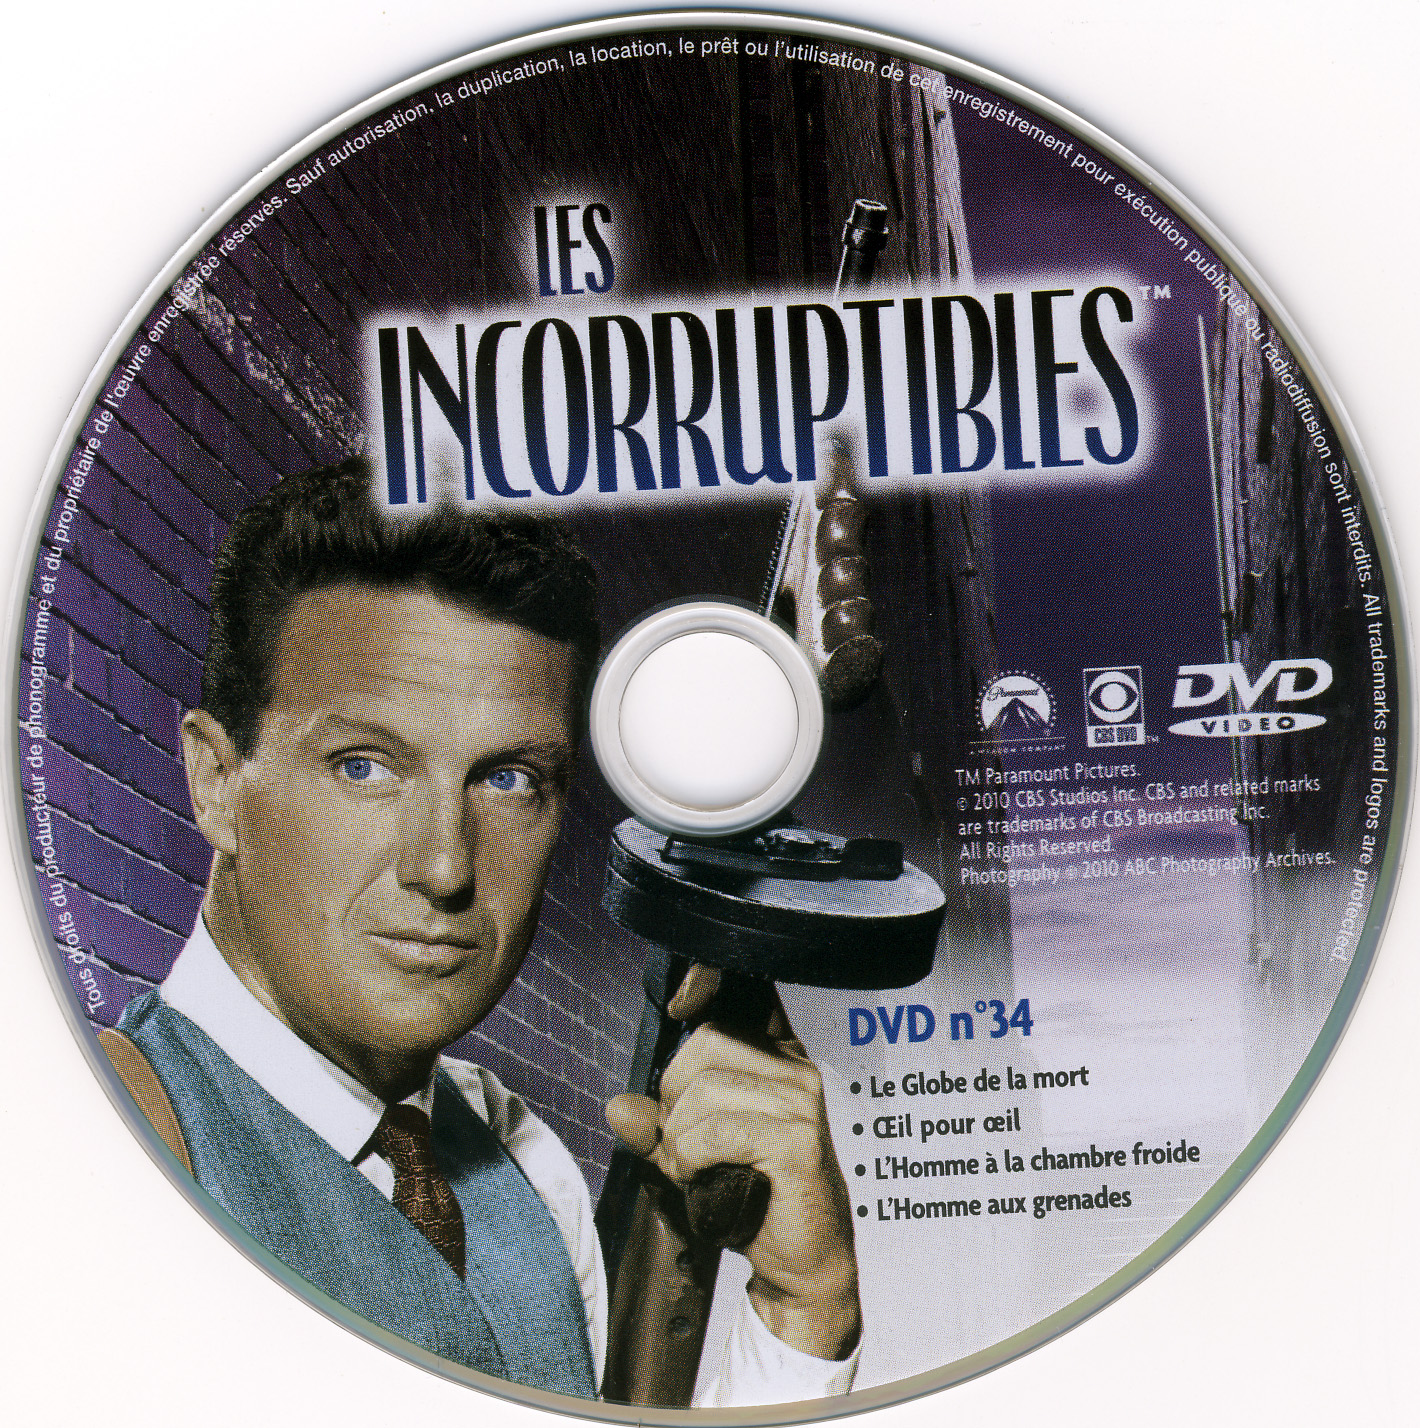 Les incorruptibles intgrale DVD 34 stick